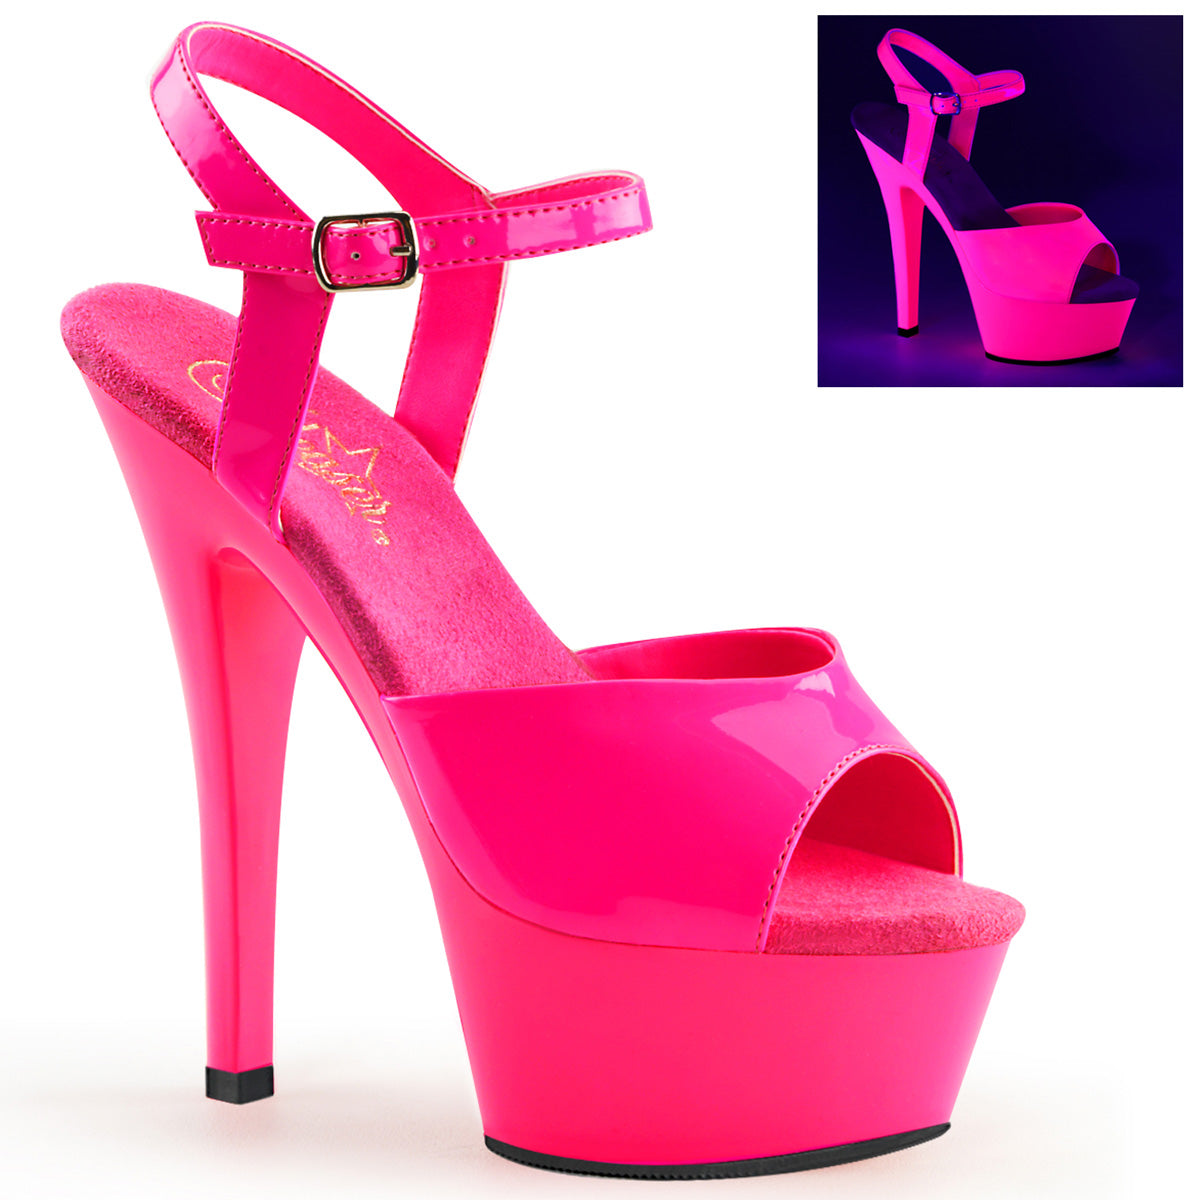 KISS-209UV 6 "Heel Neon Hot Pink Pole Dancing Platforms